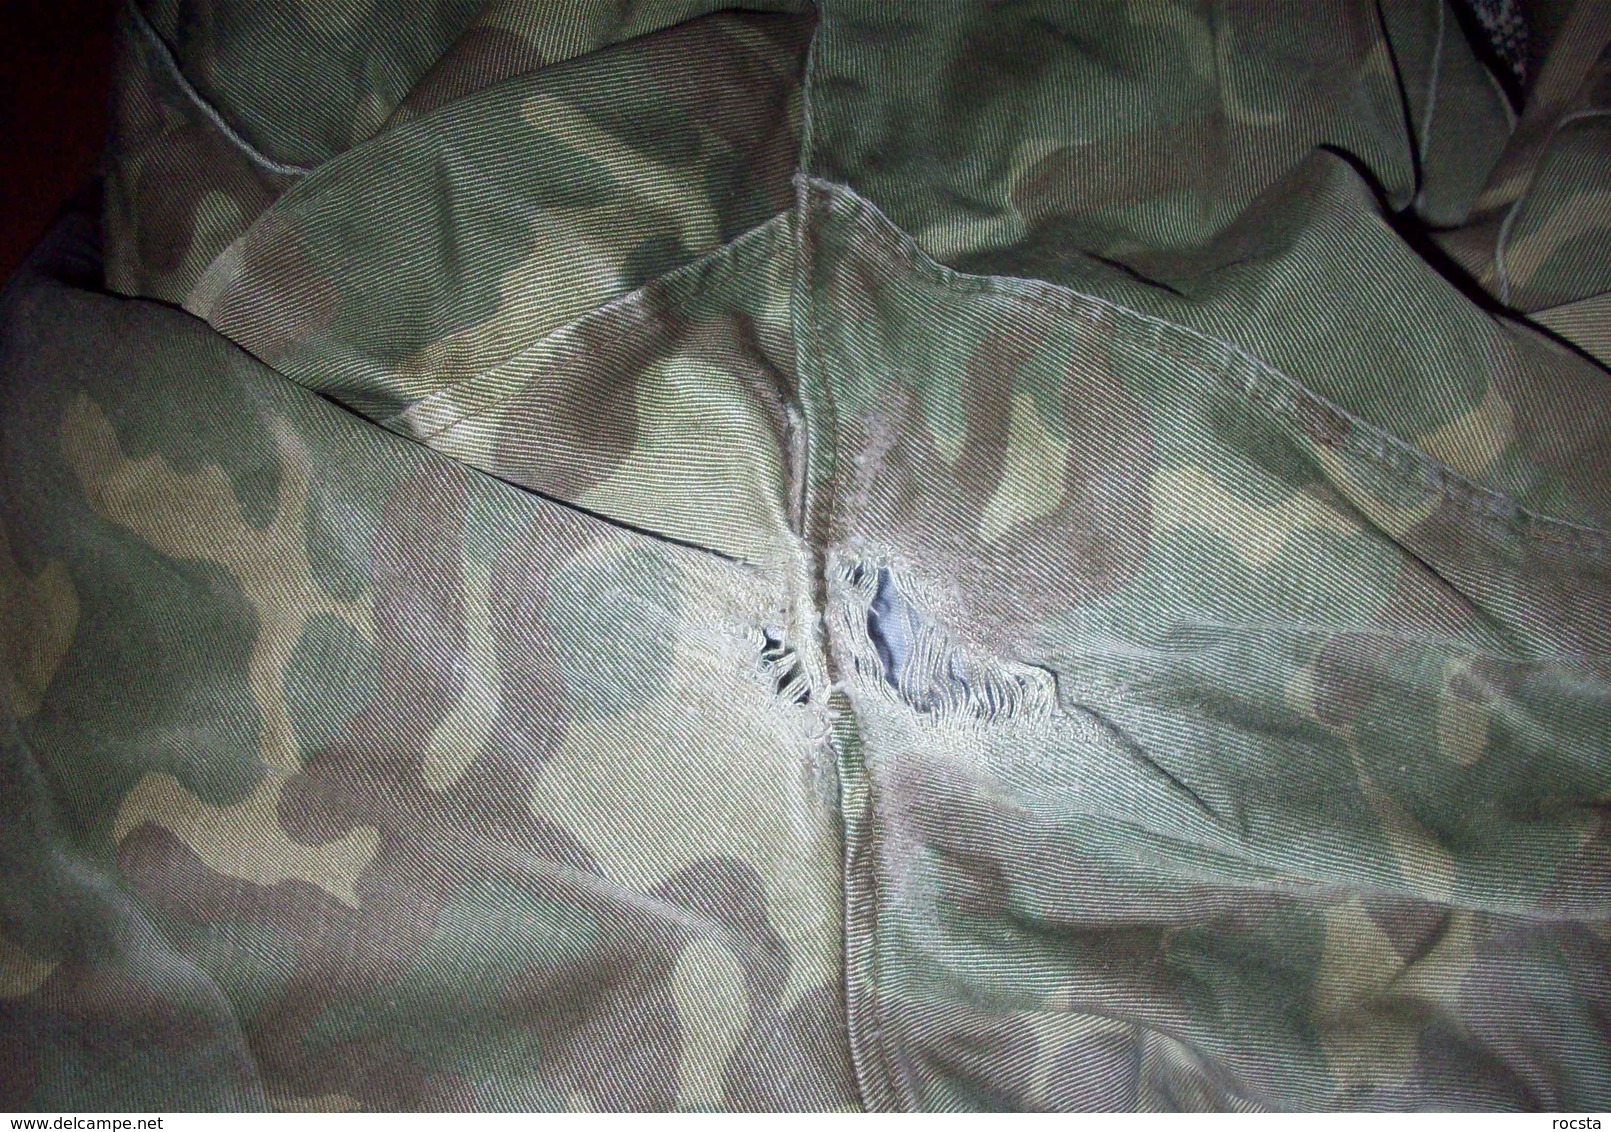 Ukrainian Army ensign camouflage uniform set (cap, jacket, pants) ATO - size 46